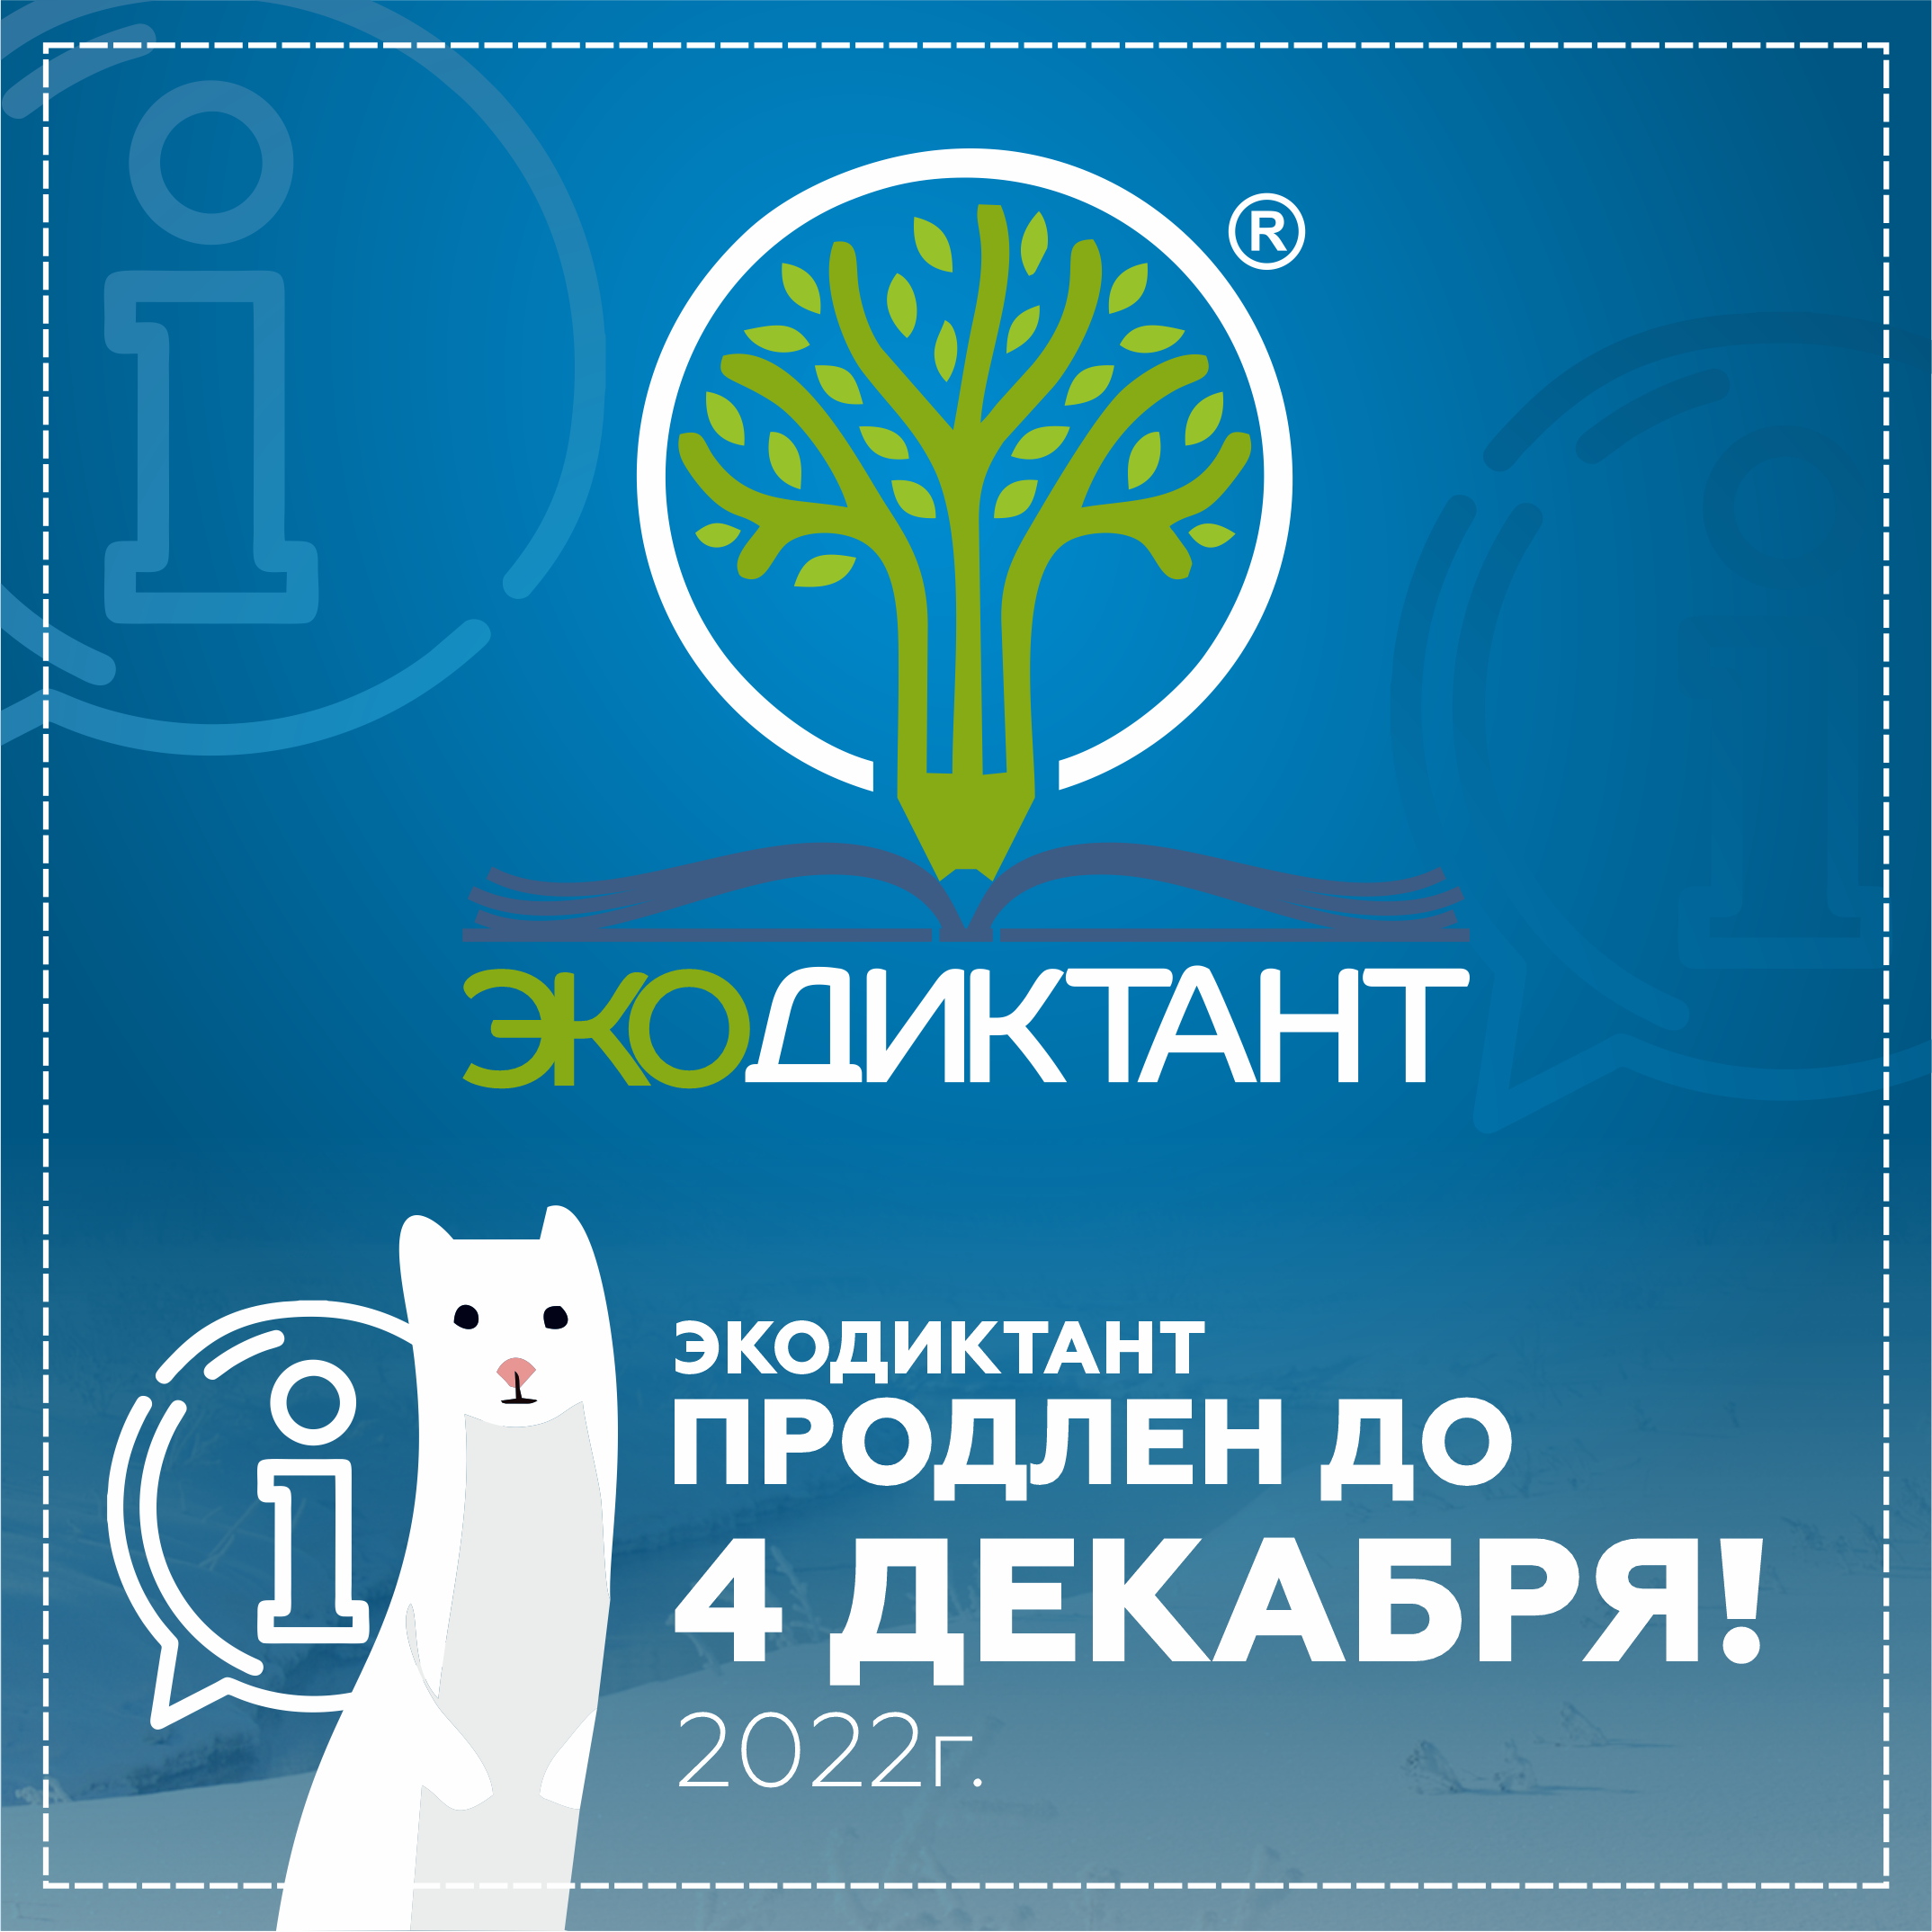 Продлено до 2022 года. Экодиктант 2022. Всероссийский экологический диктант. Всероссийский экологический диктант 2023 пройти. Экодиктант 2021.